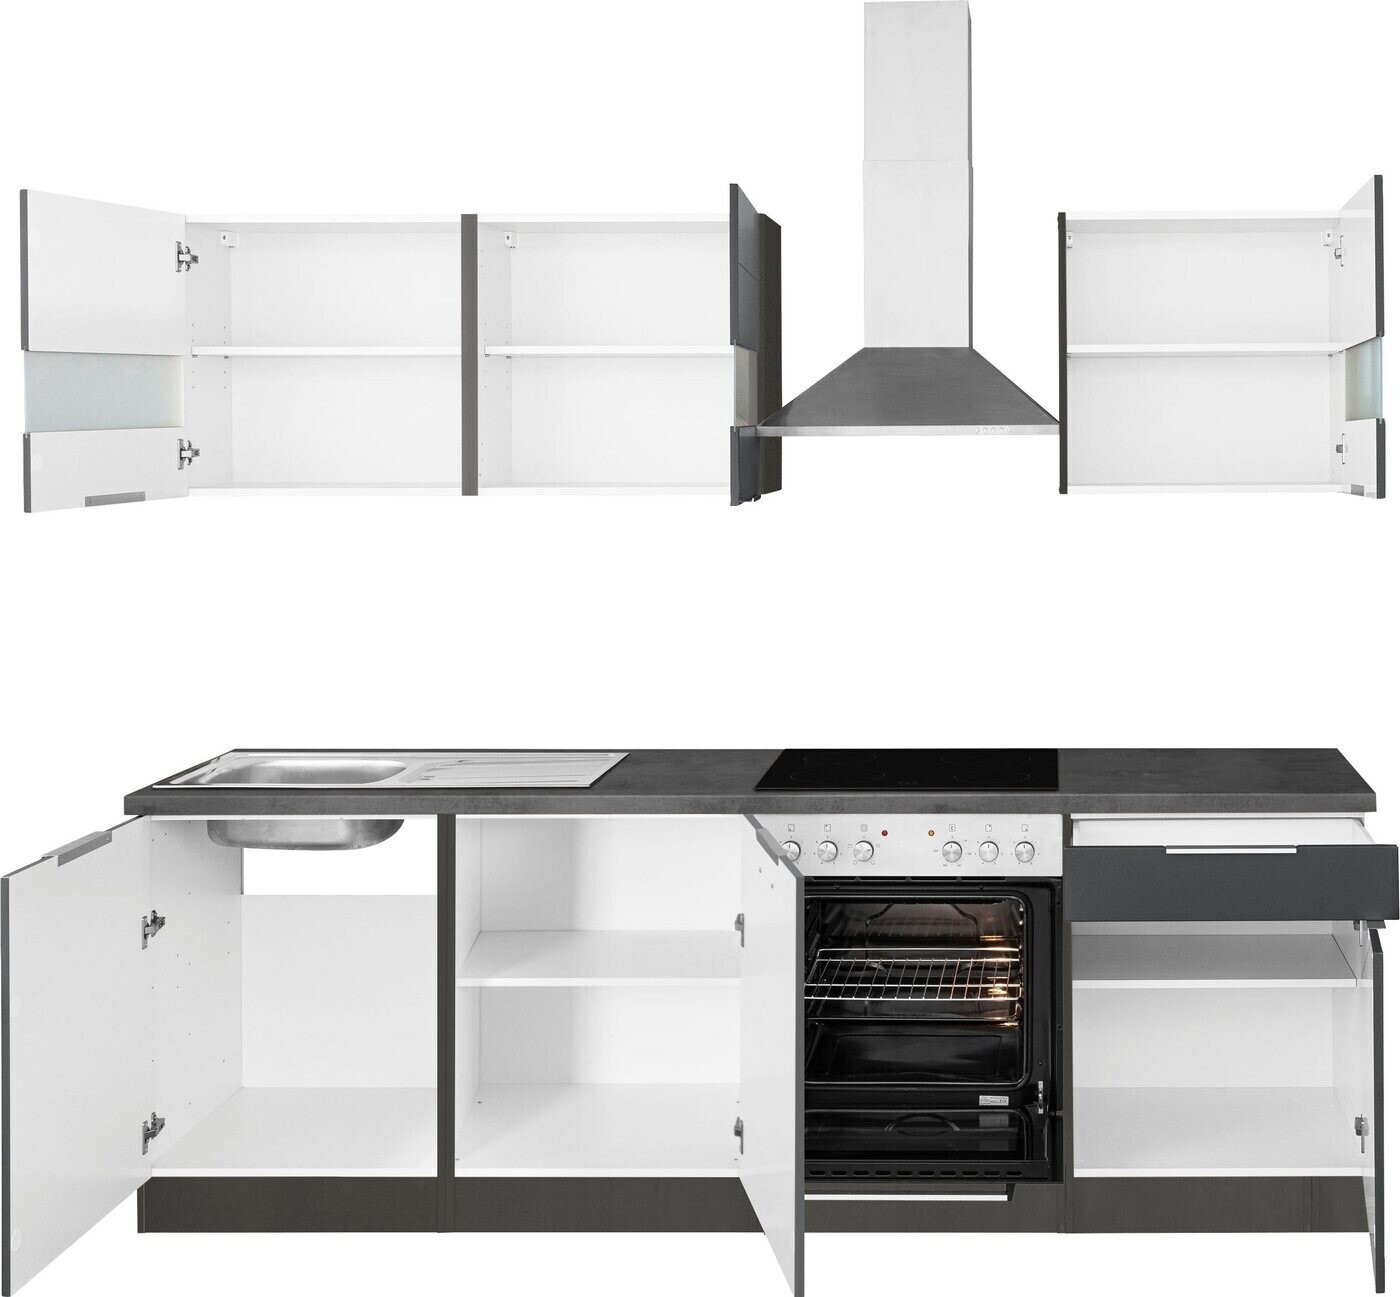 Held Preisvergleich | Luhe Möbel oxid stone grafit cm 240 weiß matt bei Komplettküchen-Sets ab 1.130,49 €